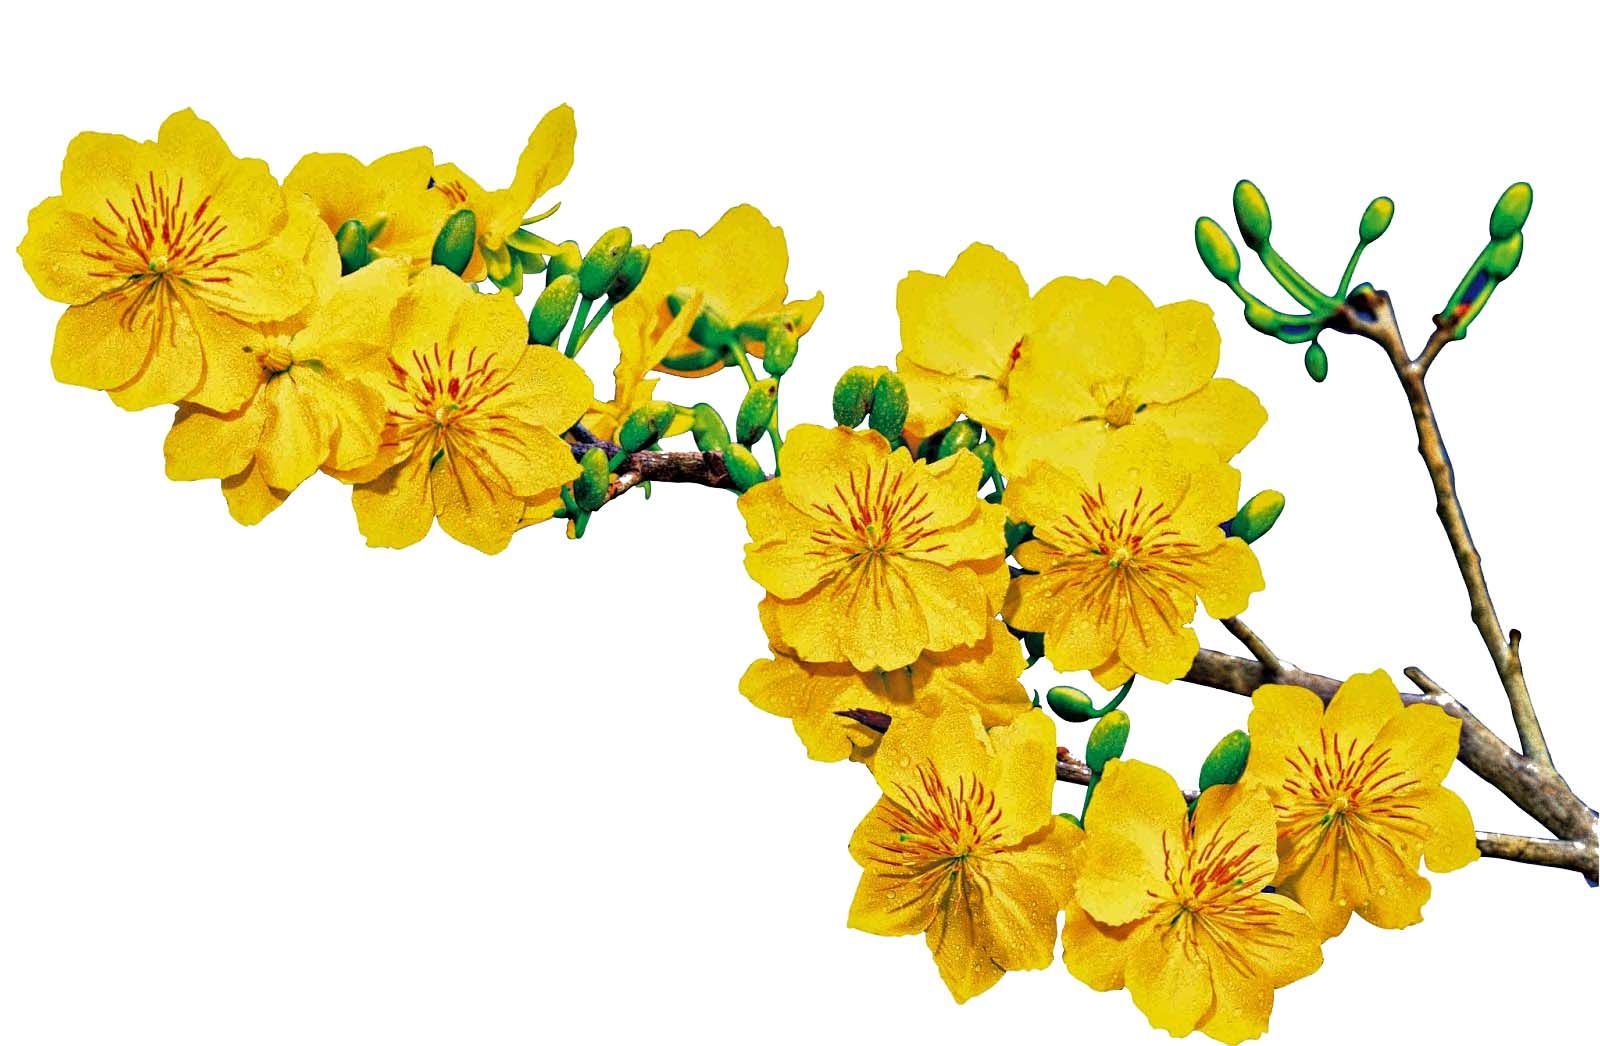 Hoa mai tết là loài hoa mang ý nghĩa rất đặc biệt trong lòng người Việt Nam khi Tết đến. Hãy đến và chiêm ngưỡng vẻ đẹp tinh tế và sự đa dạng trong sắc hoa của loài hoa này qua bức ảnh đẹp từng đường nét.